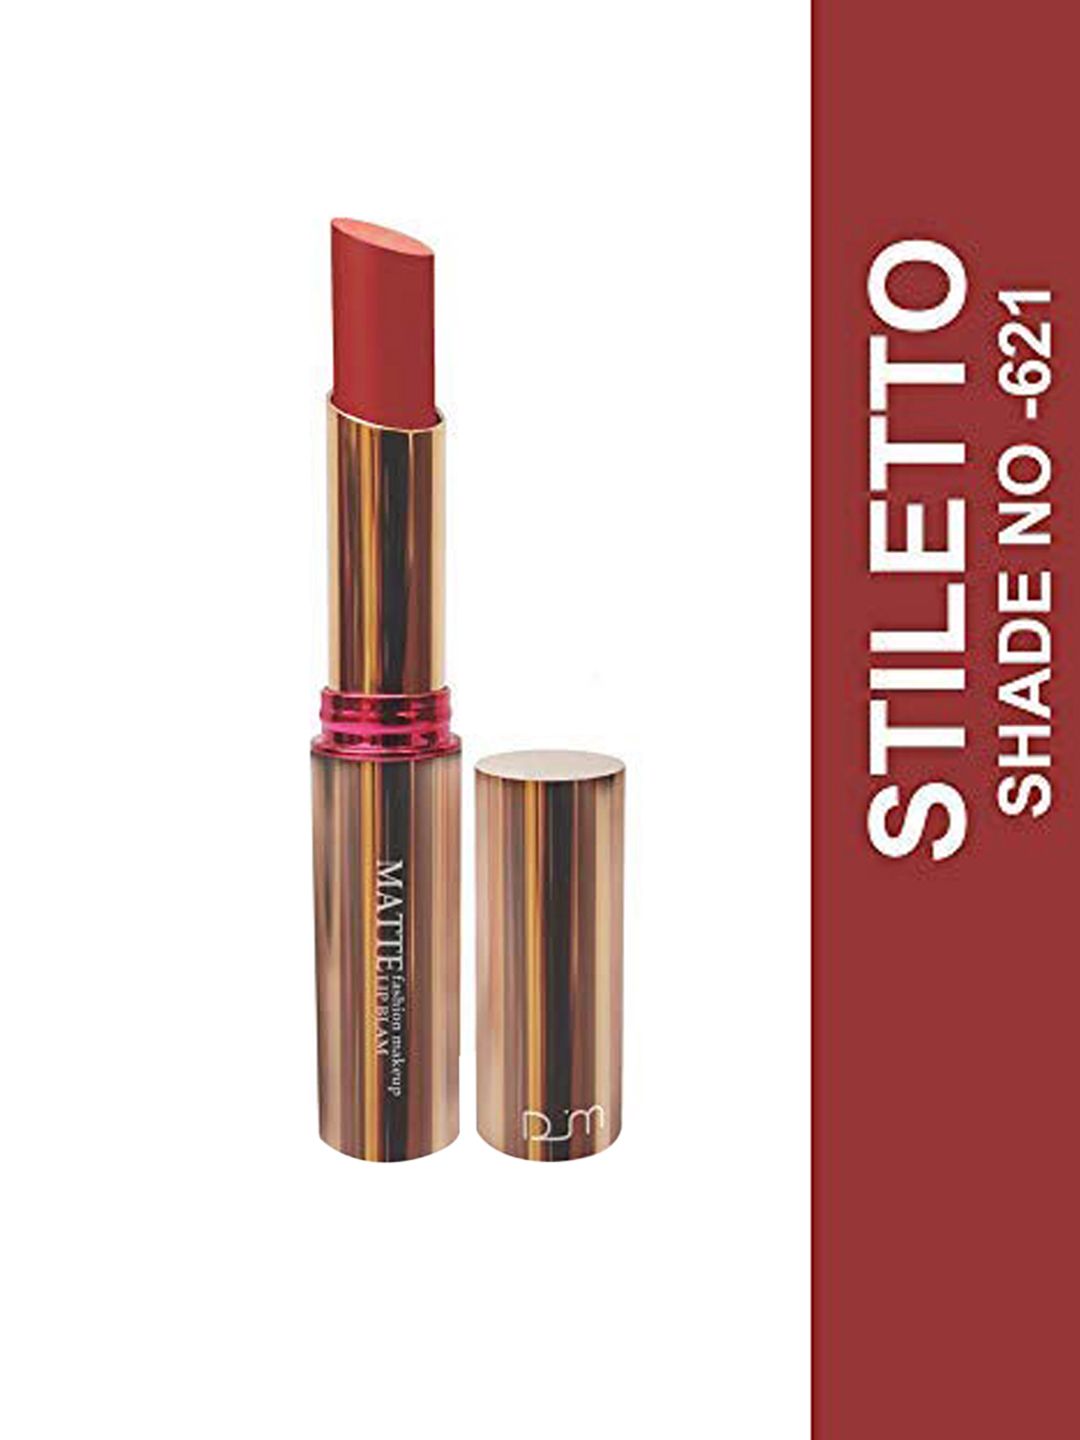 Seven Seas Matte With You Lipstick, 3.8 gm - Stilletto Price in India